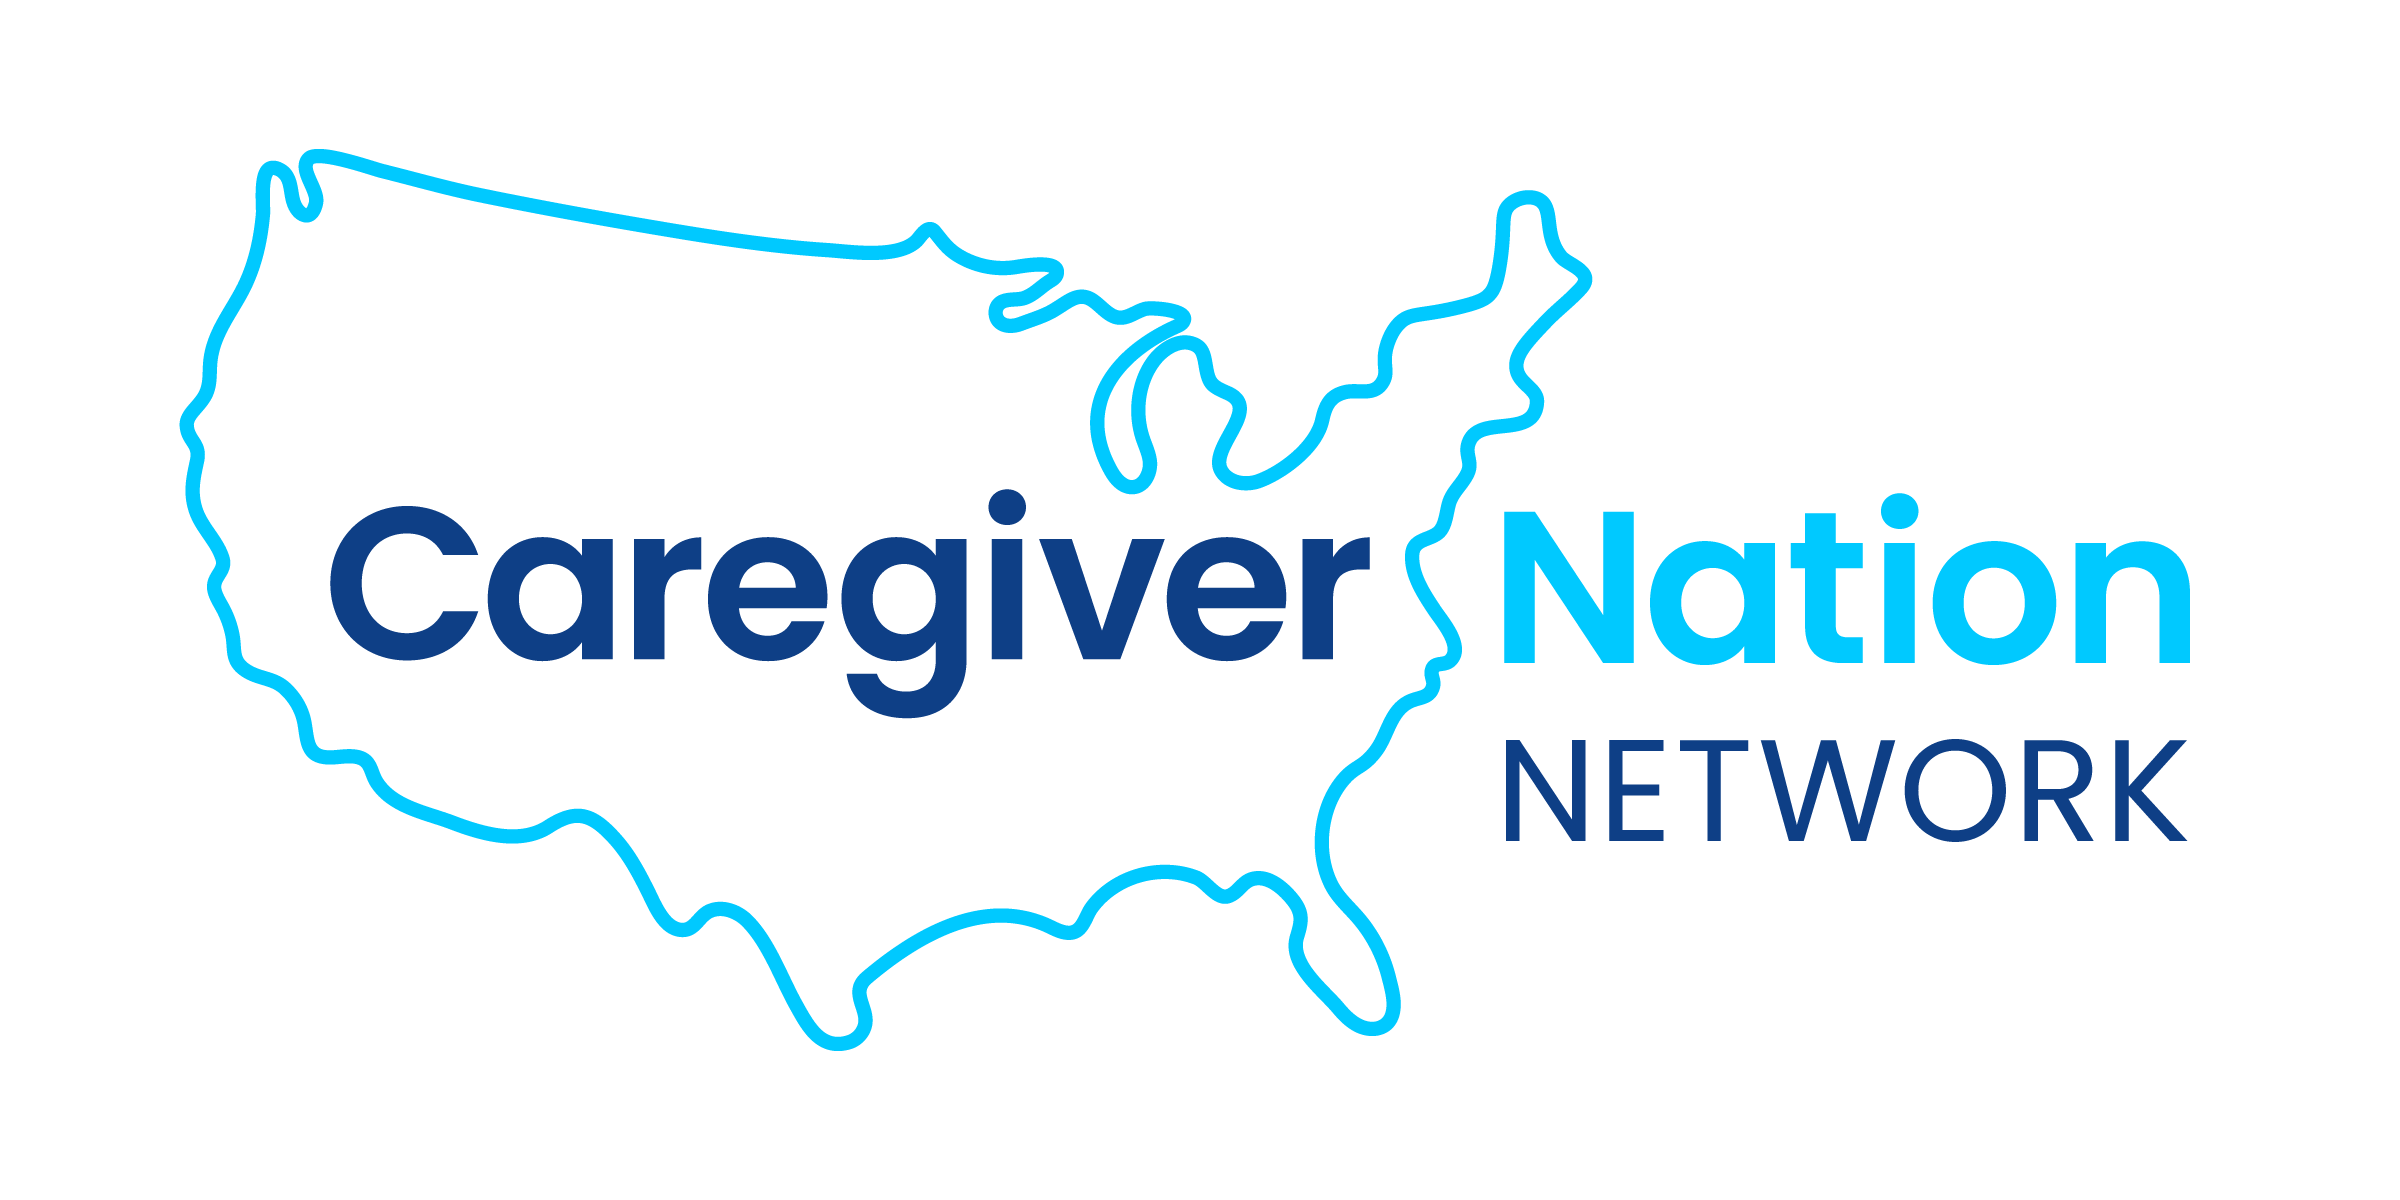 Caregiver Nation Network